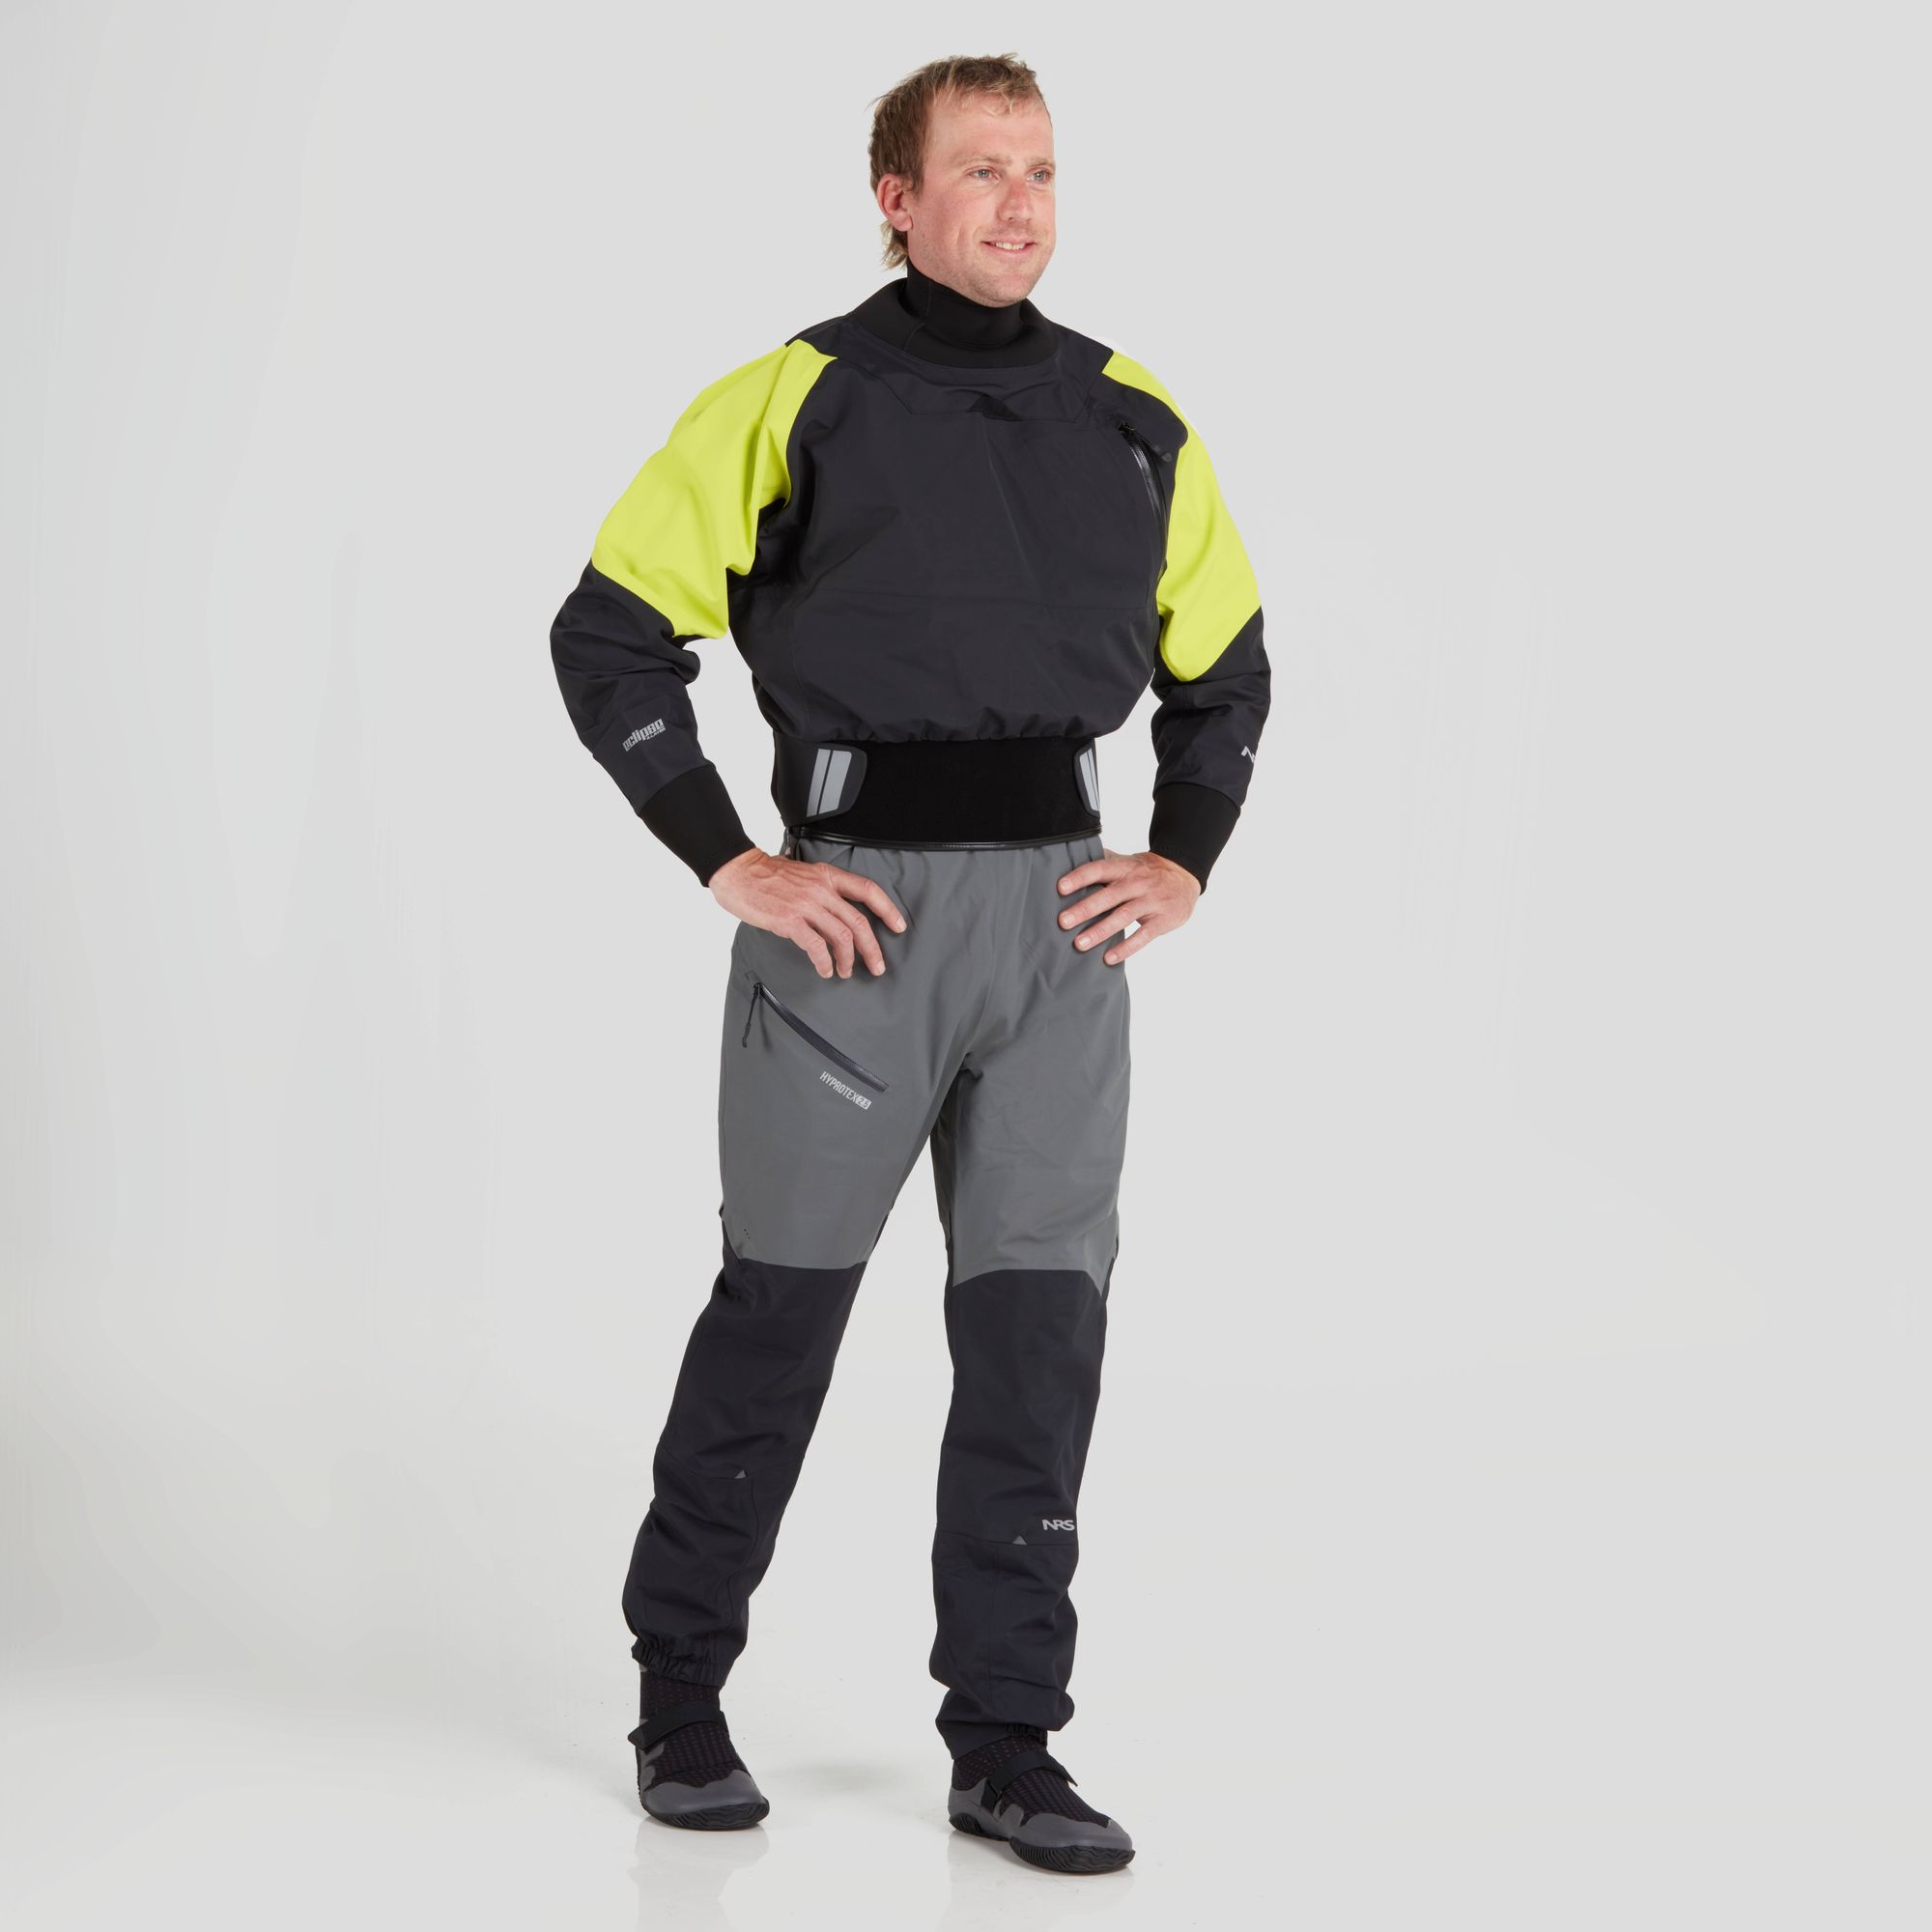 NRS Flux Dry Top Jacket Mens NEW Herren Trockenjacke Paddeljacke